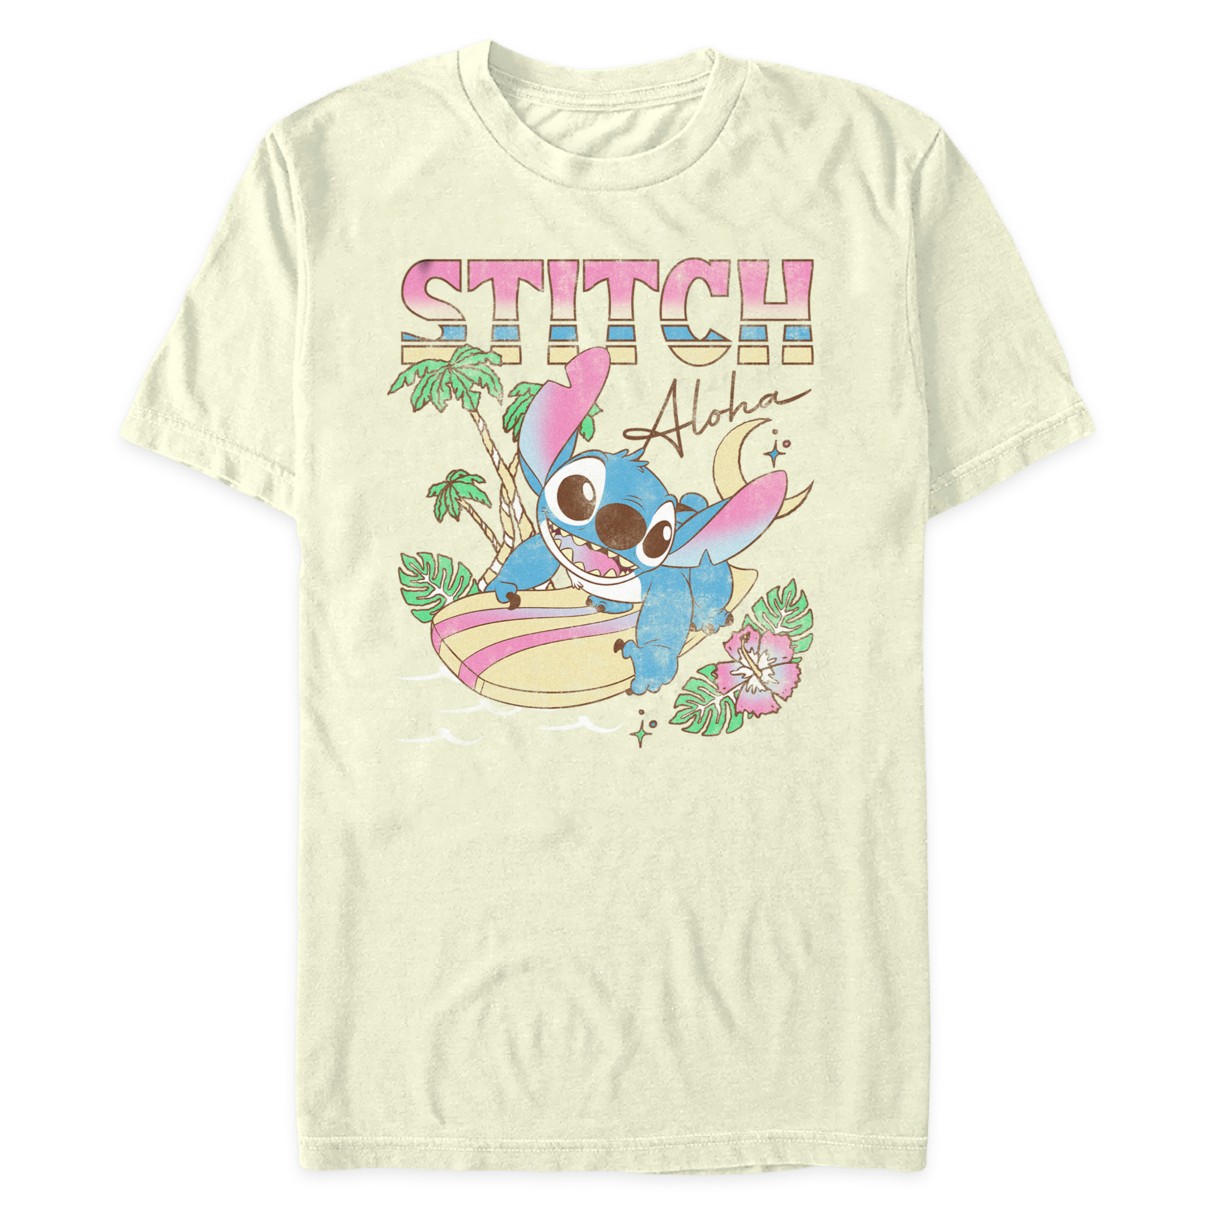 Lilo And Stitch Merch for Sale